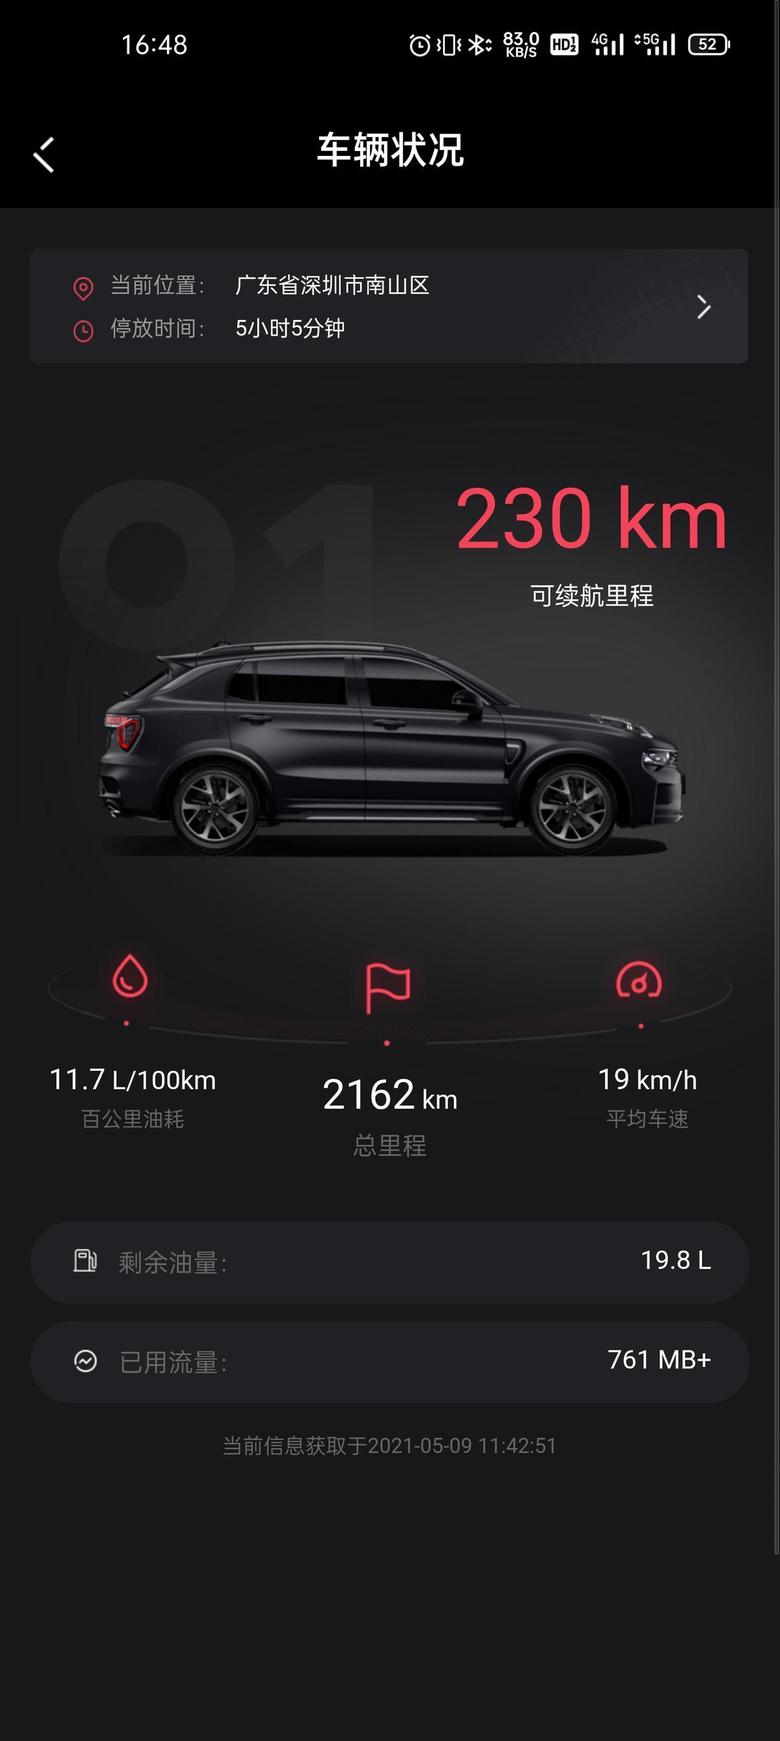 领克01 2021.3.11提的车，差不多两个多月了。深圳南山区科技园，基本上上下班开车，油耗快12了，高速还没有跑过。